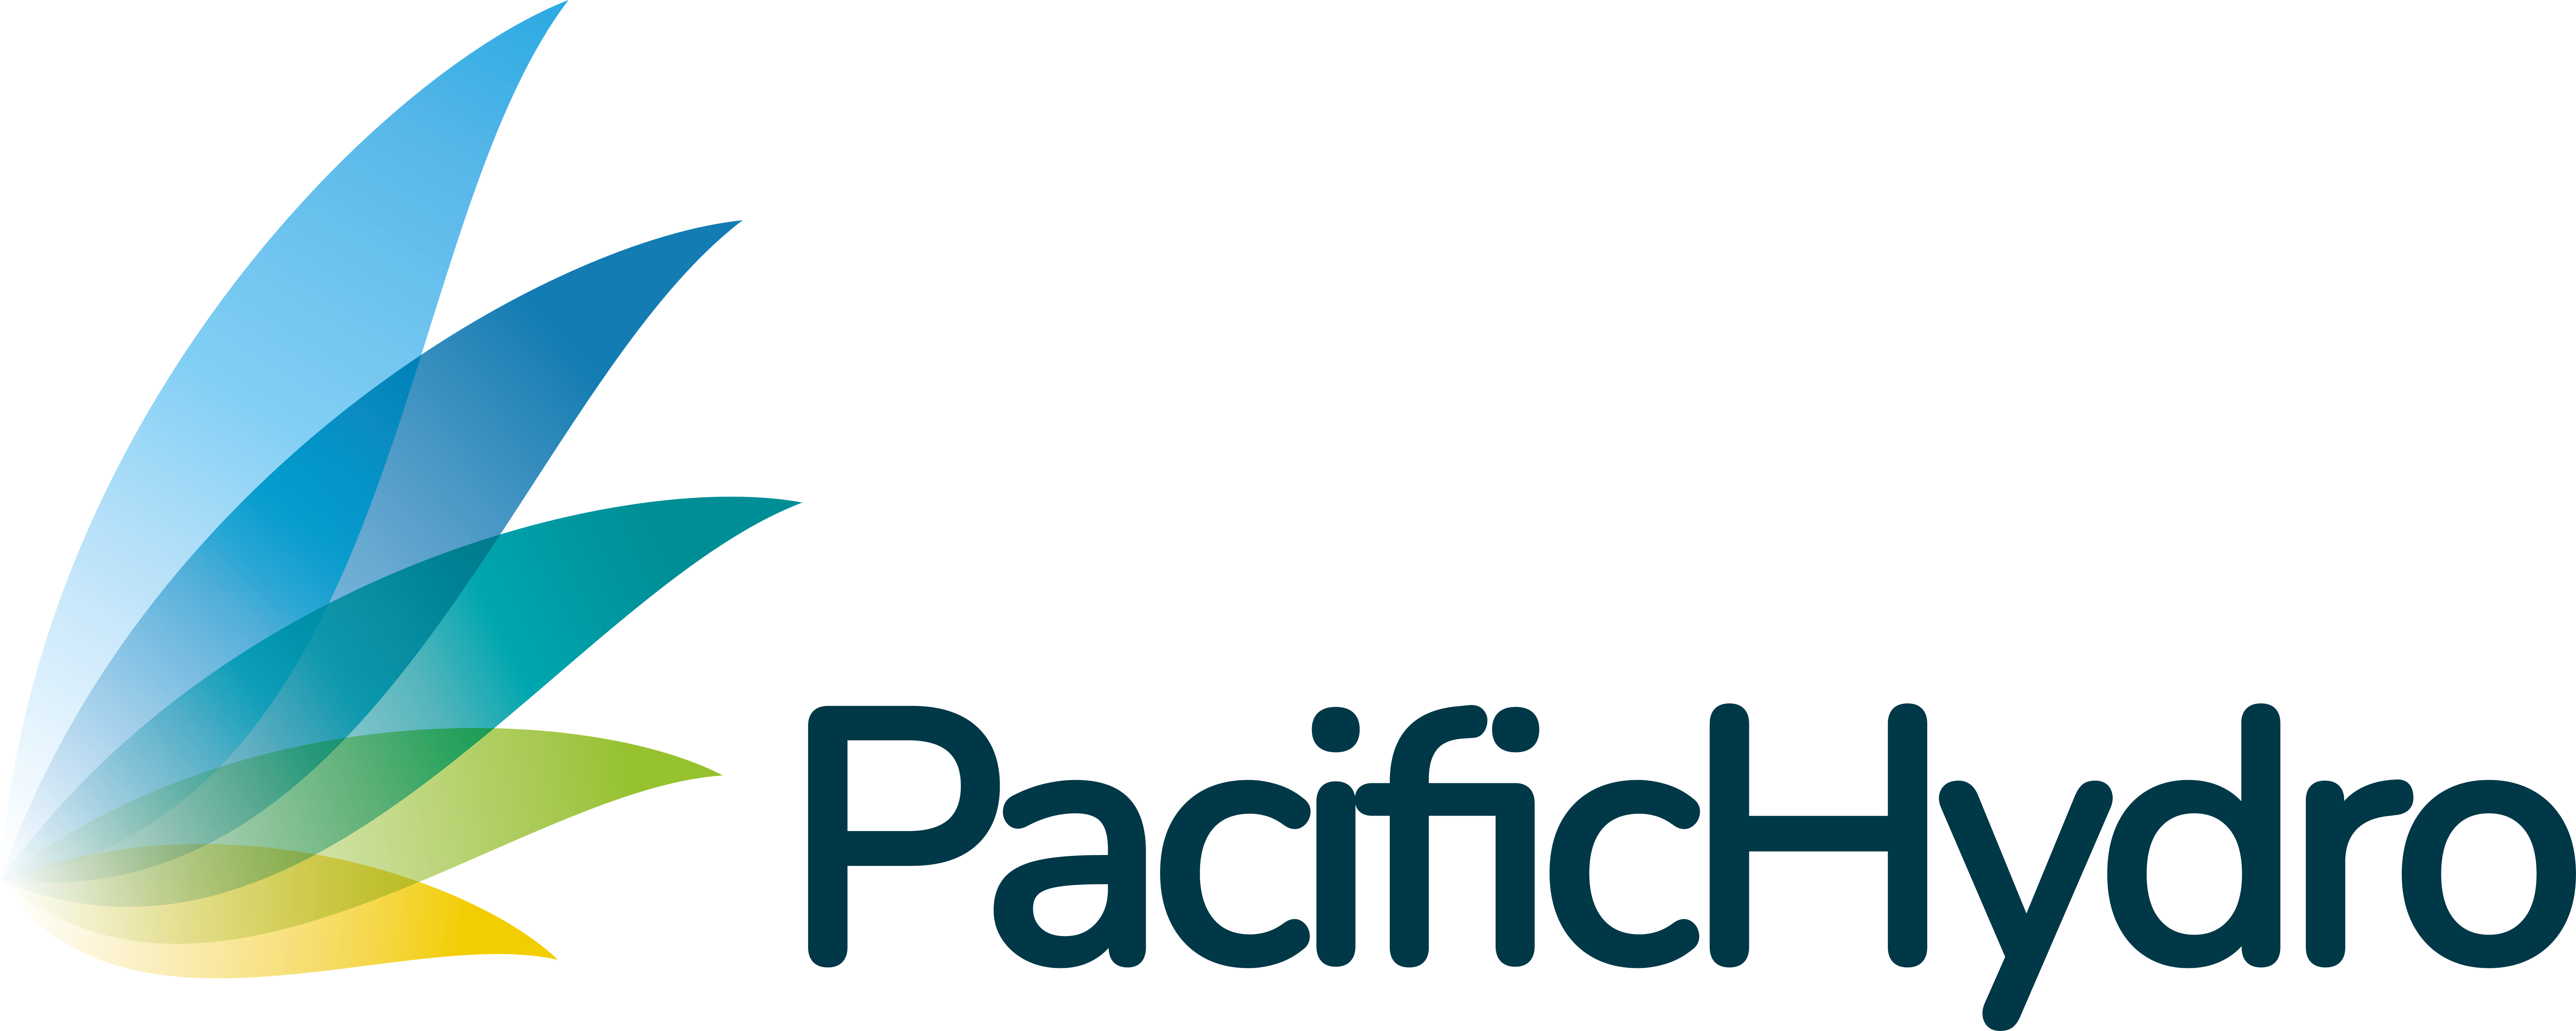 Pacific Hydro